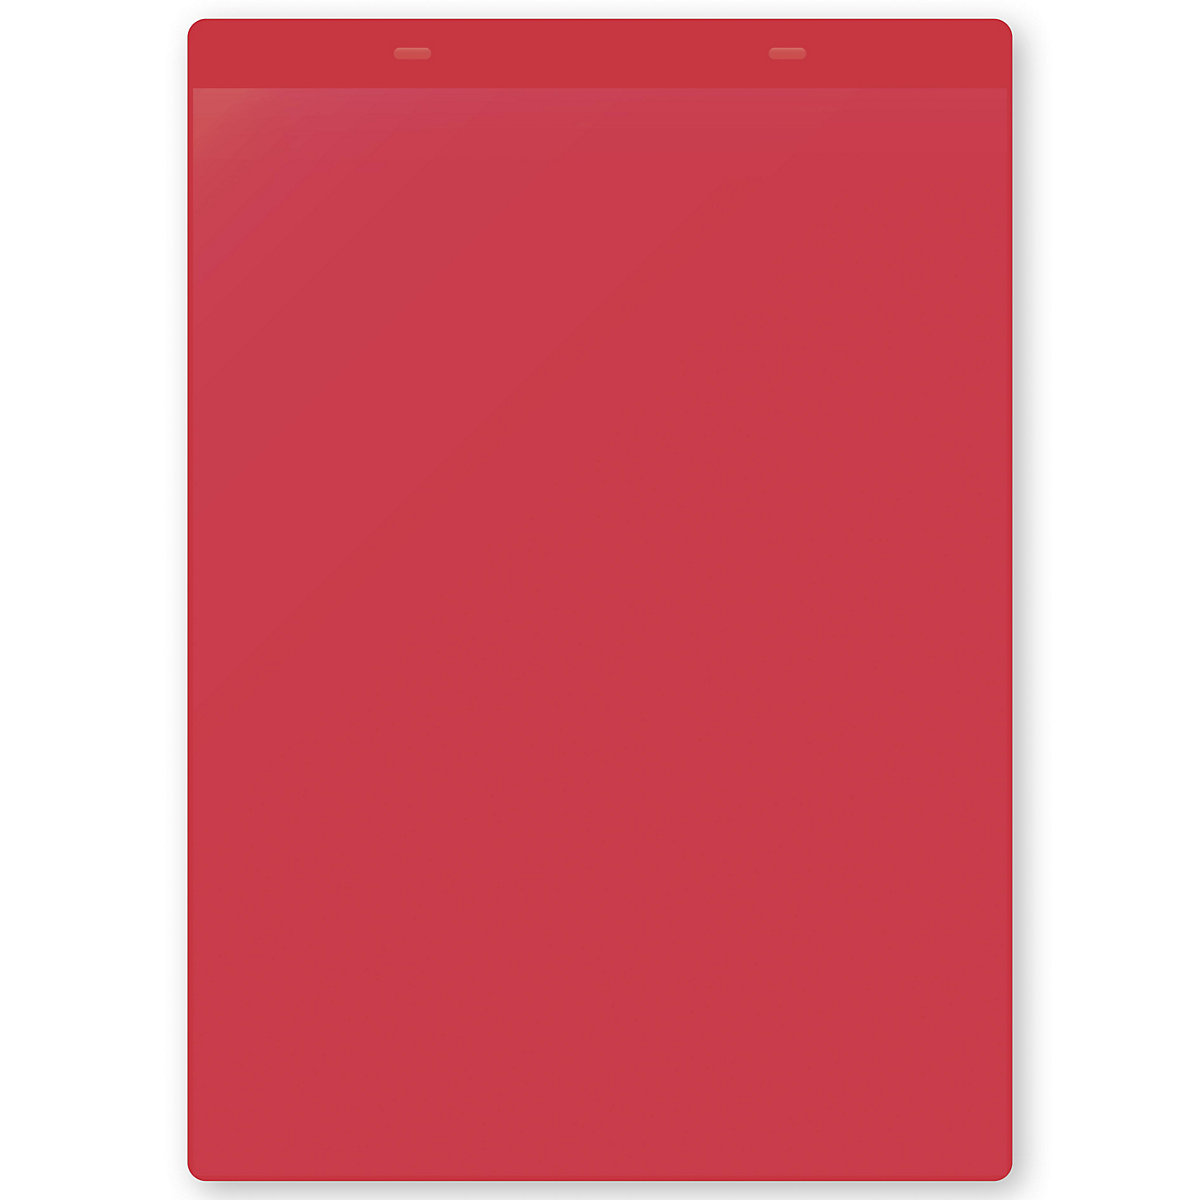 Öntapadó dokumentumtartó tasakok, DIN A4, álló, cs. e. 50 db, piros